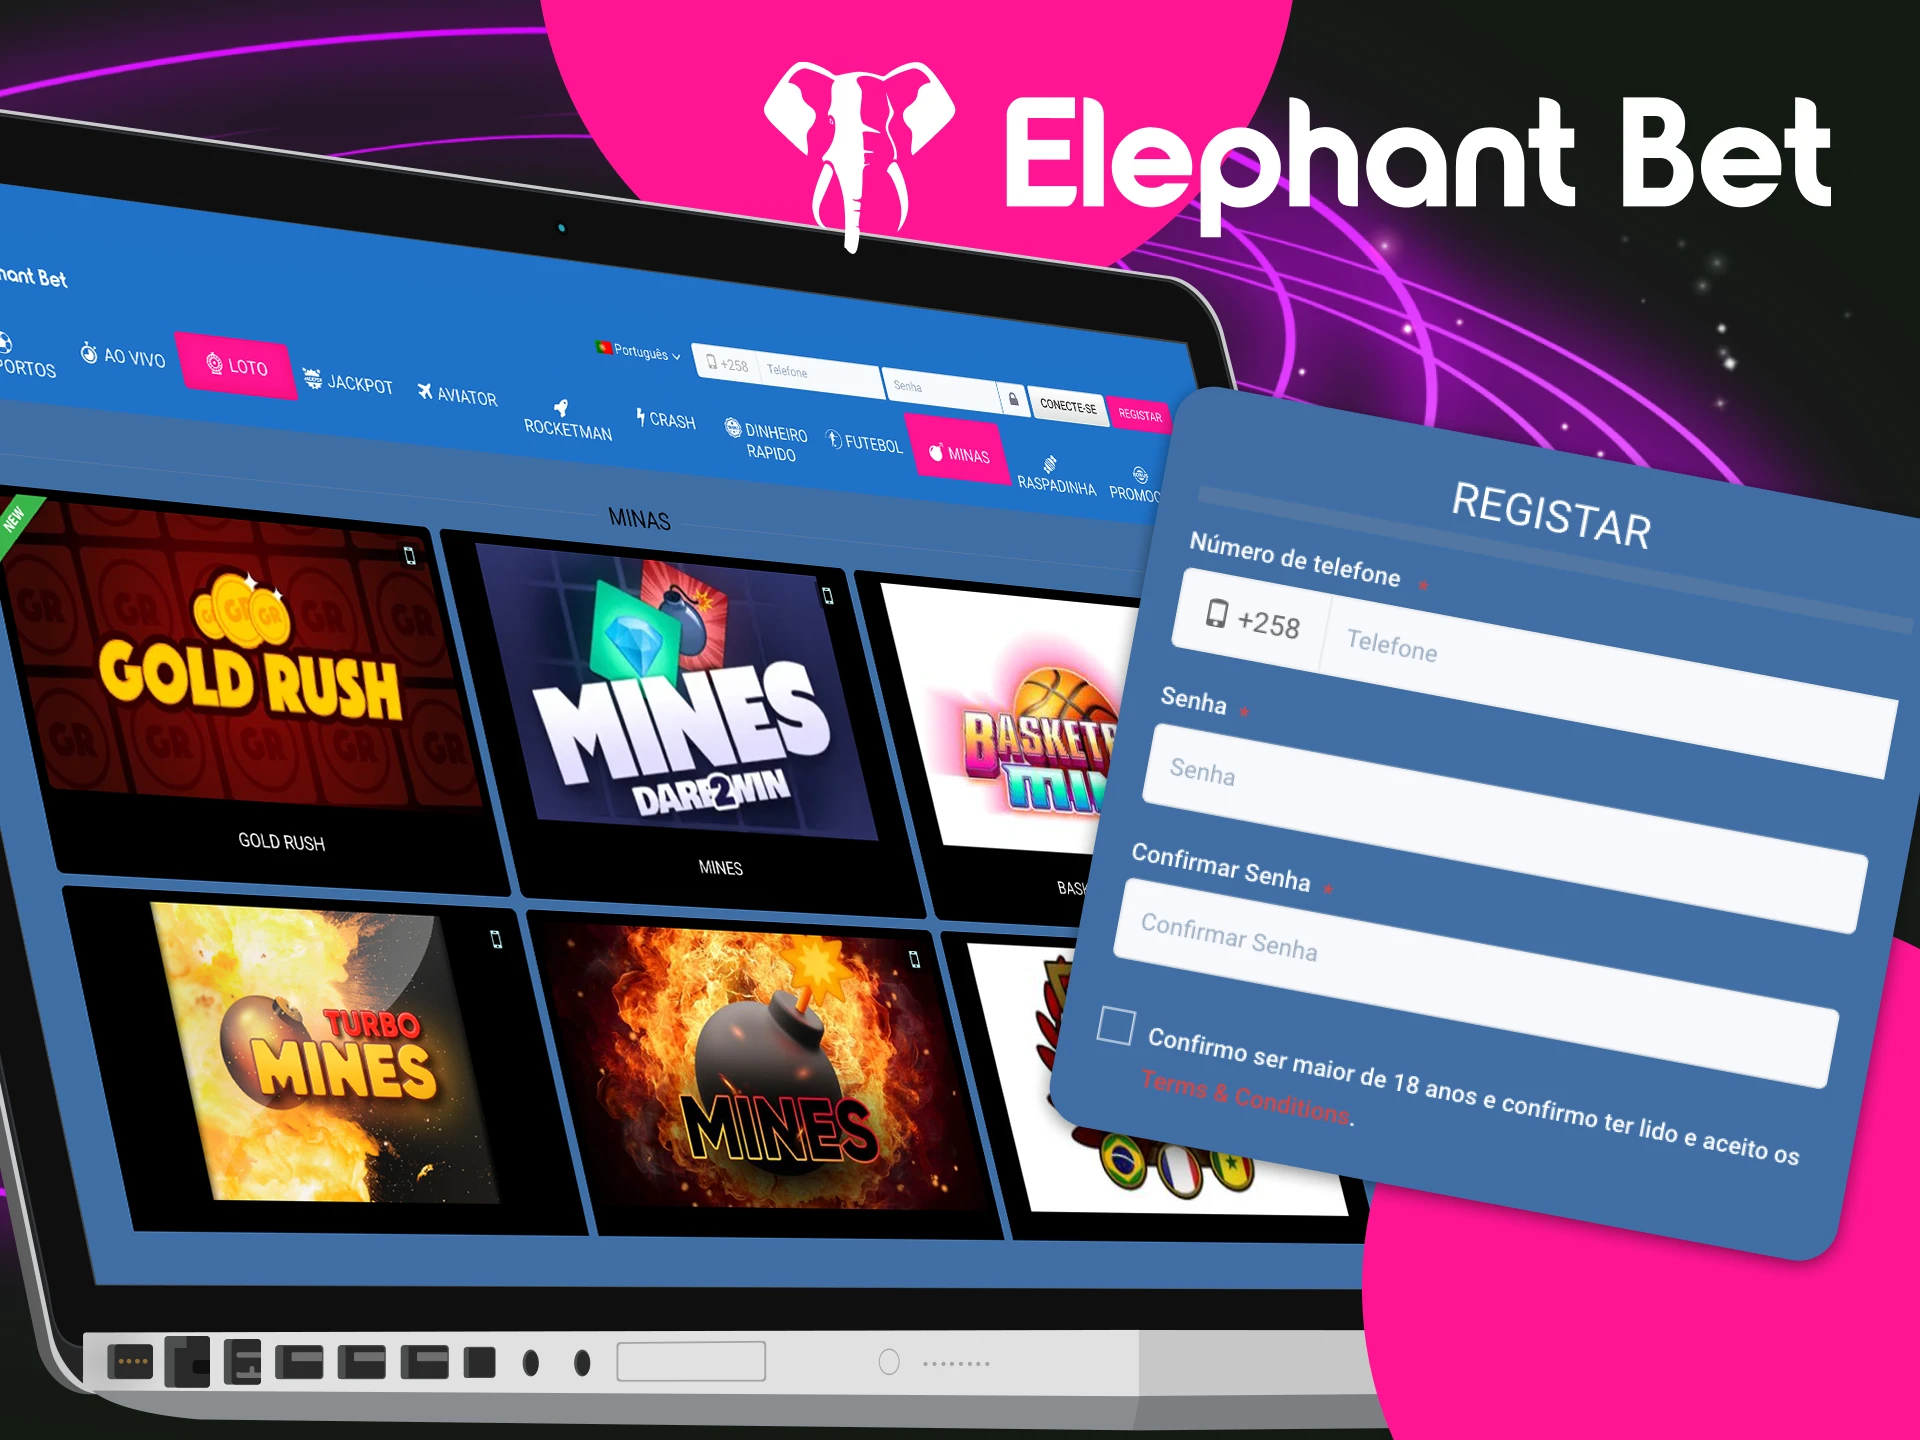 Instruções passo a passo para os jogadores sobre o que precisam fazer para começar a jogar no cassino online Elephant Bet.